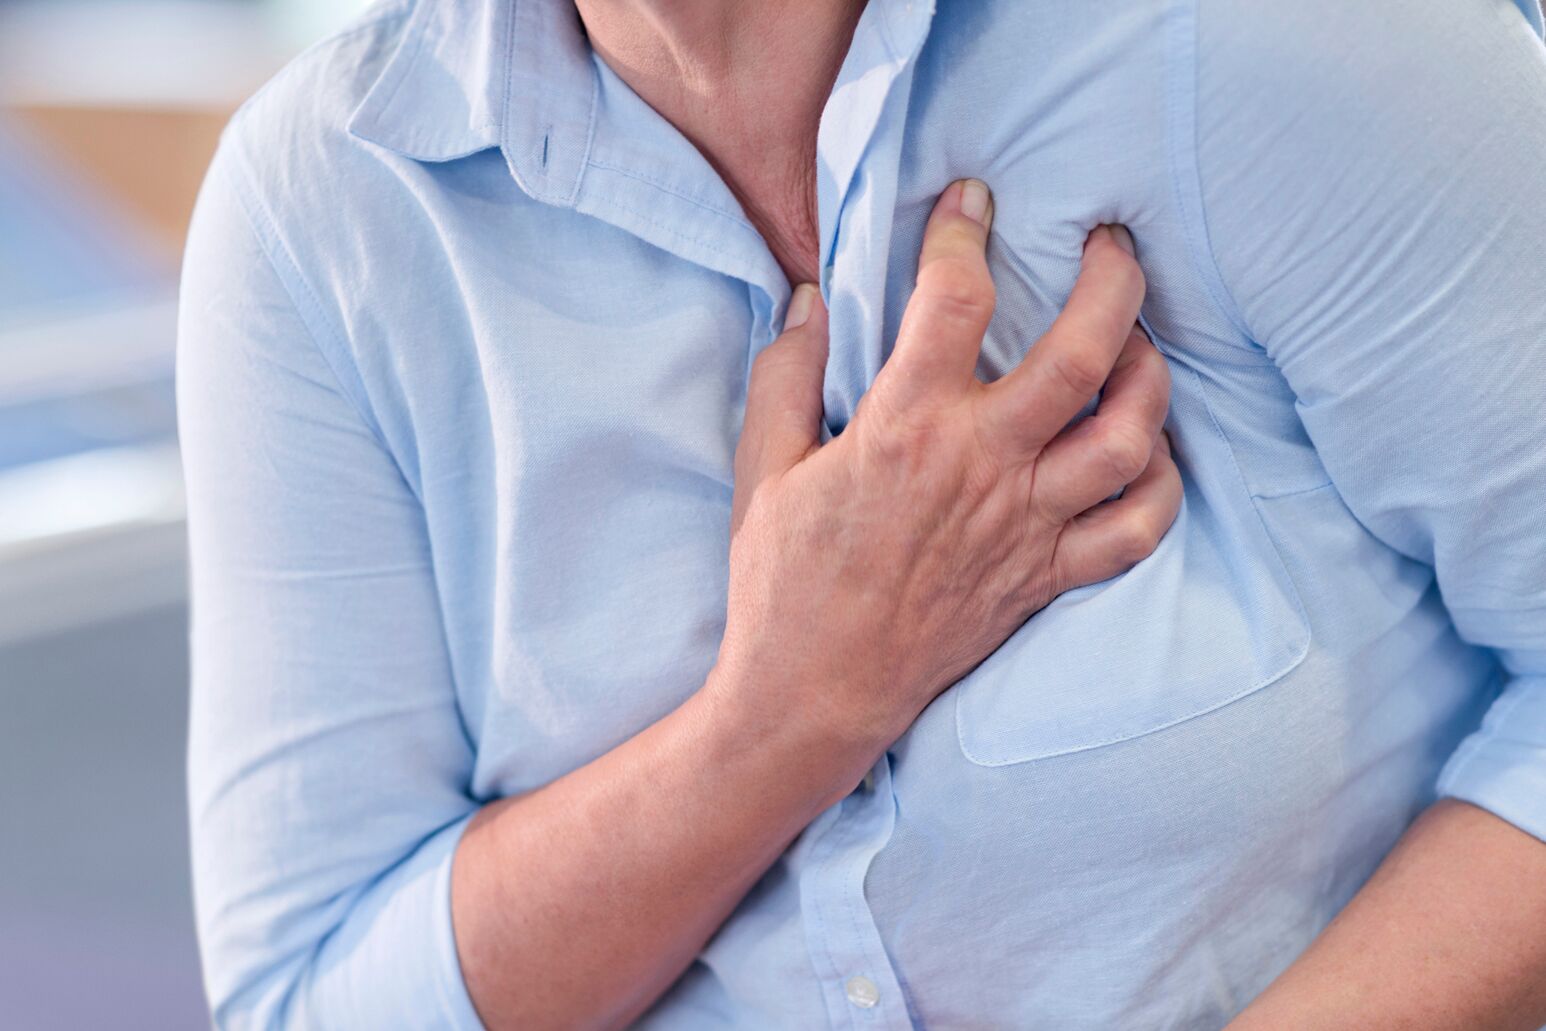 المقياس الذي يشير إلى نشاط القلب الكهربائي - رجل ظن الأطباء أنه يعاني نوبة قلبية بعد ابتلاعه بطارية - تخطيط القلب - ابتلاع بطارية